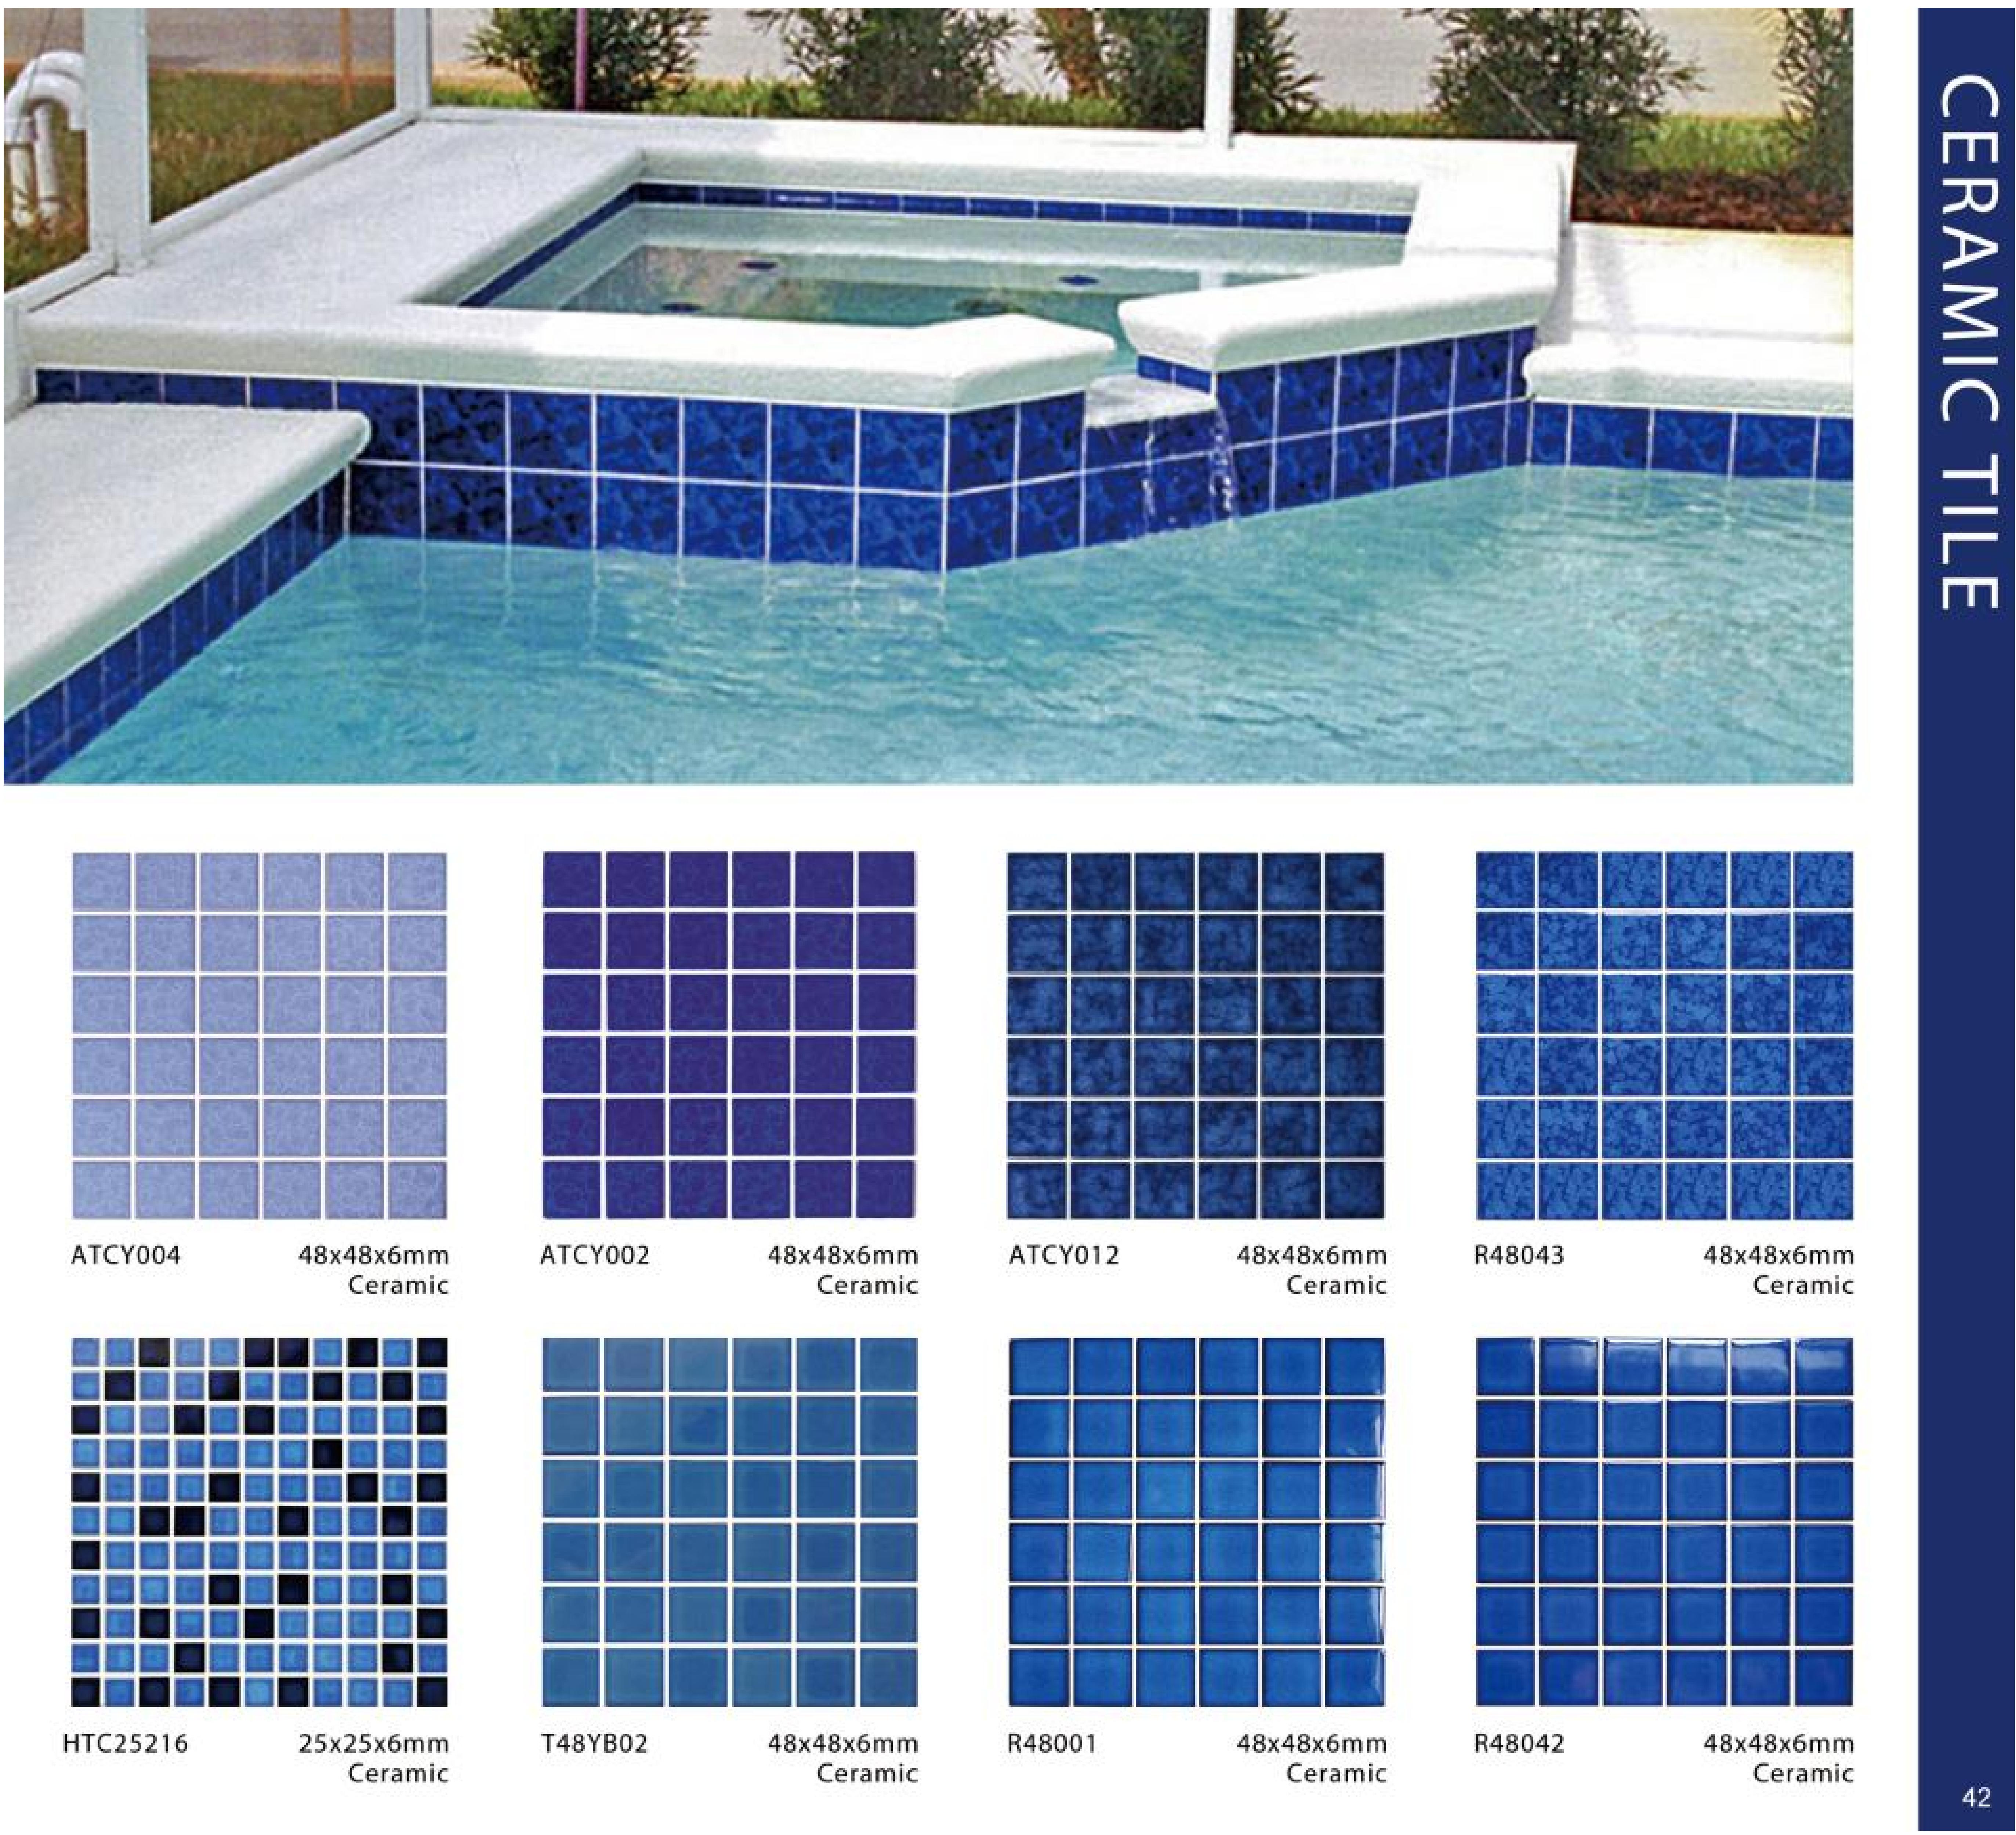 2023 Swimming Pool Tiles - Ralart_42.jpg